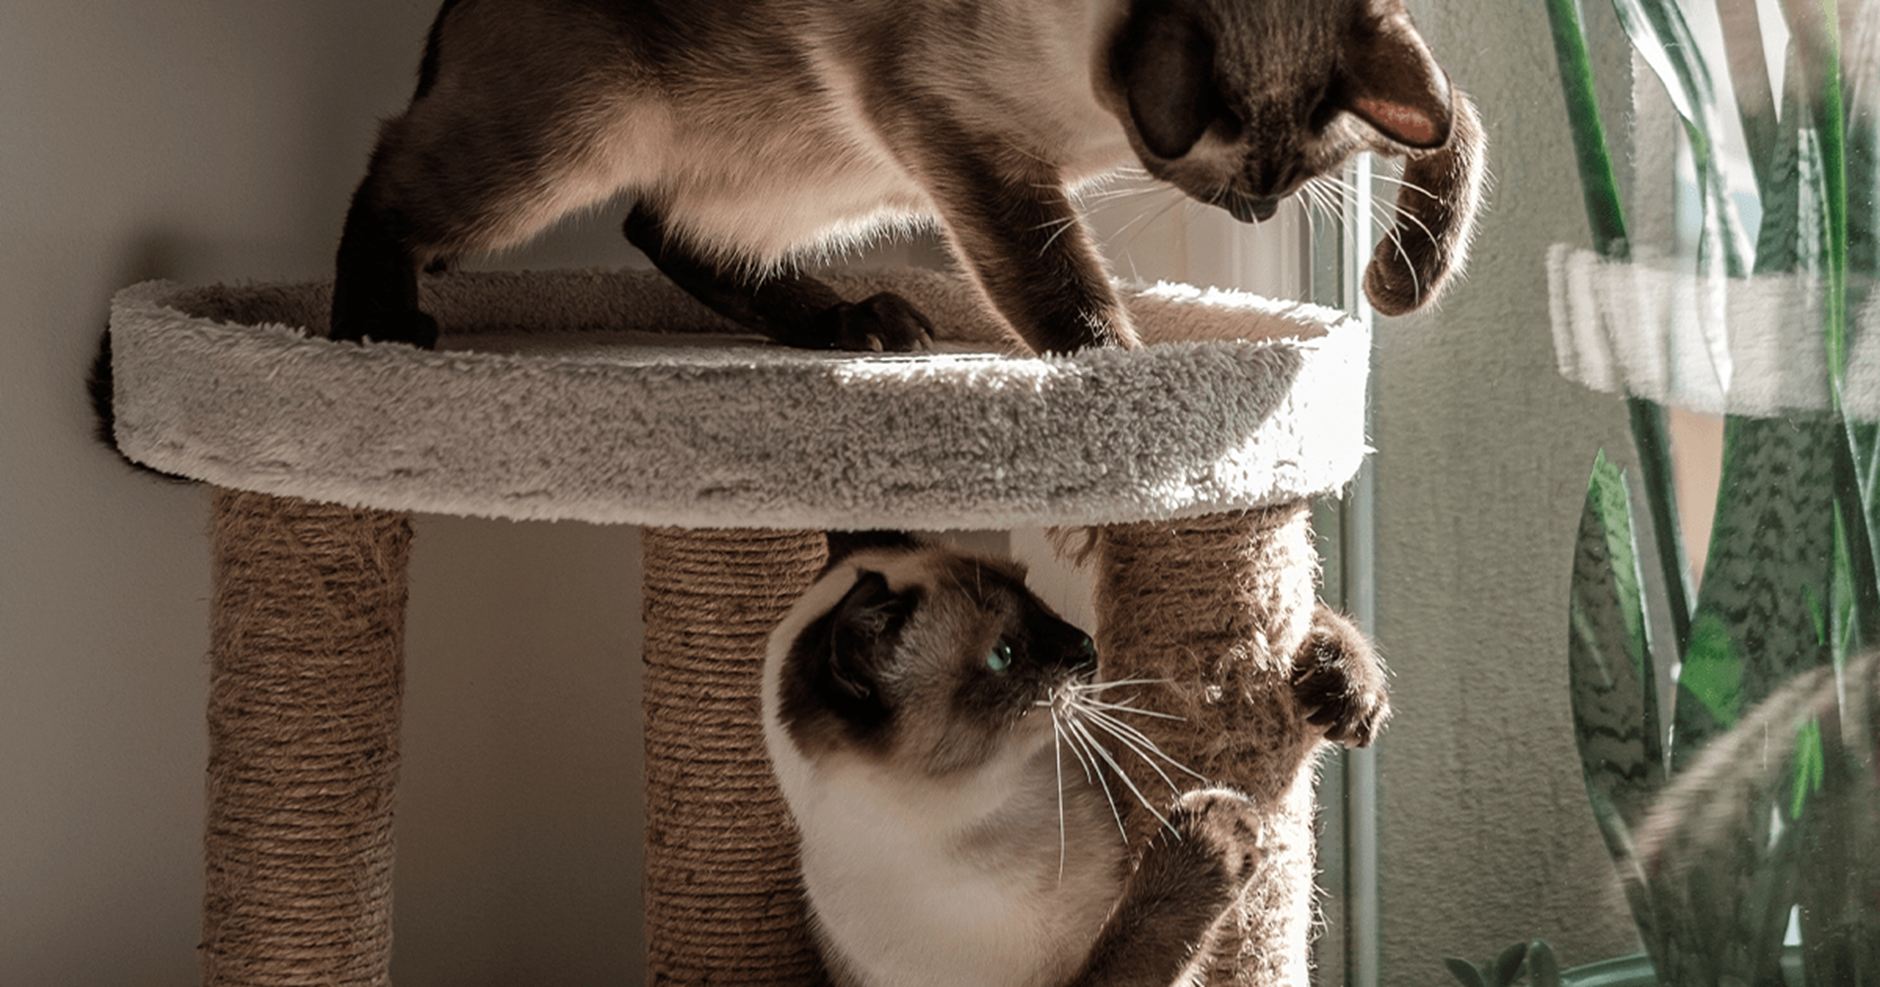 Dois gatos brincando em uma torre de vários níveis com postes para arranhar.